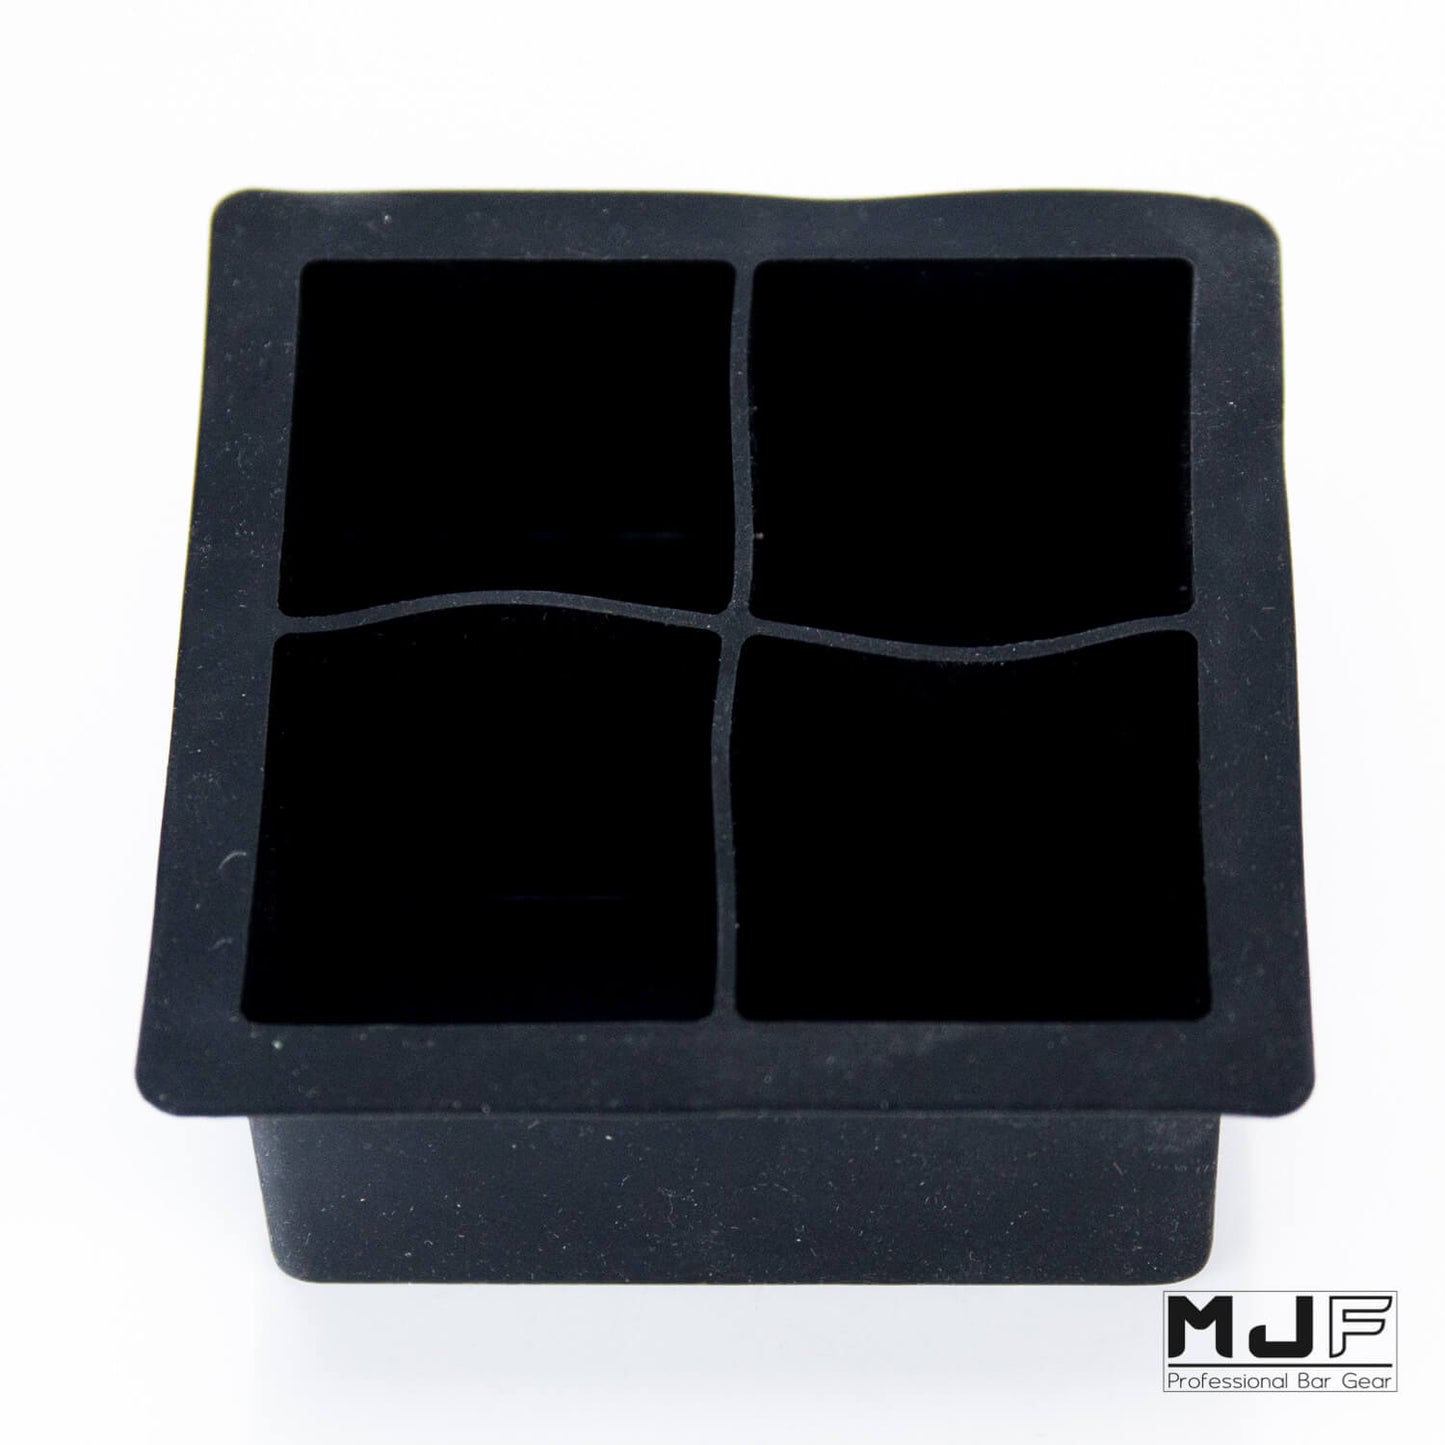 MJF 四格大冰模組(黑)+透明蓋